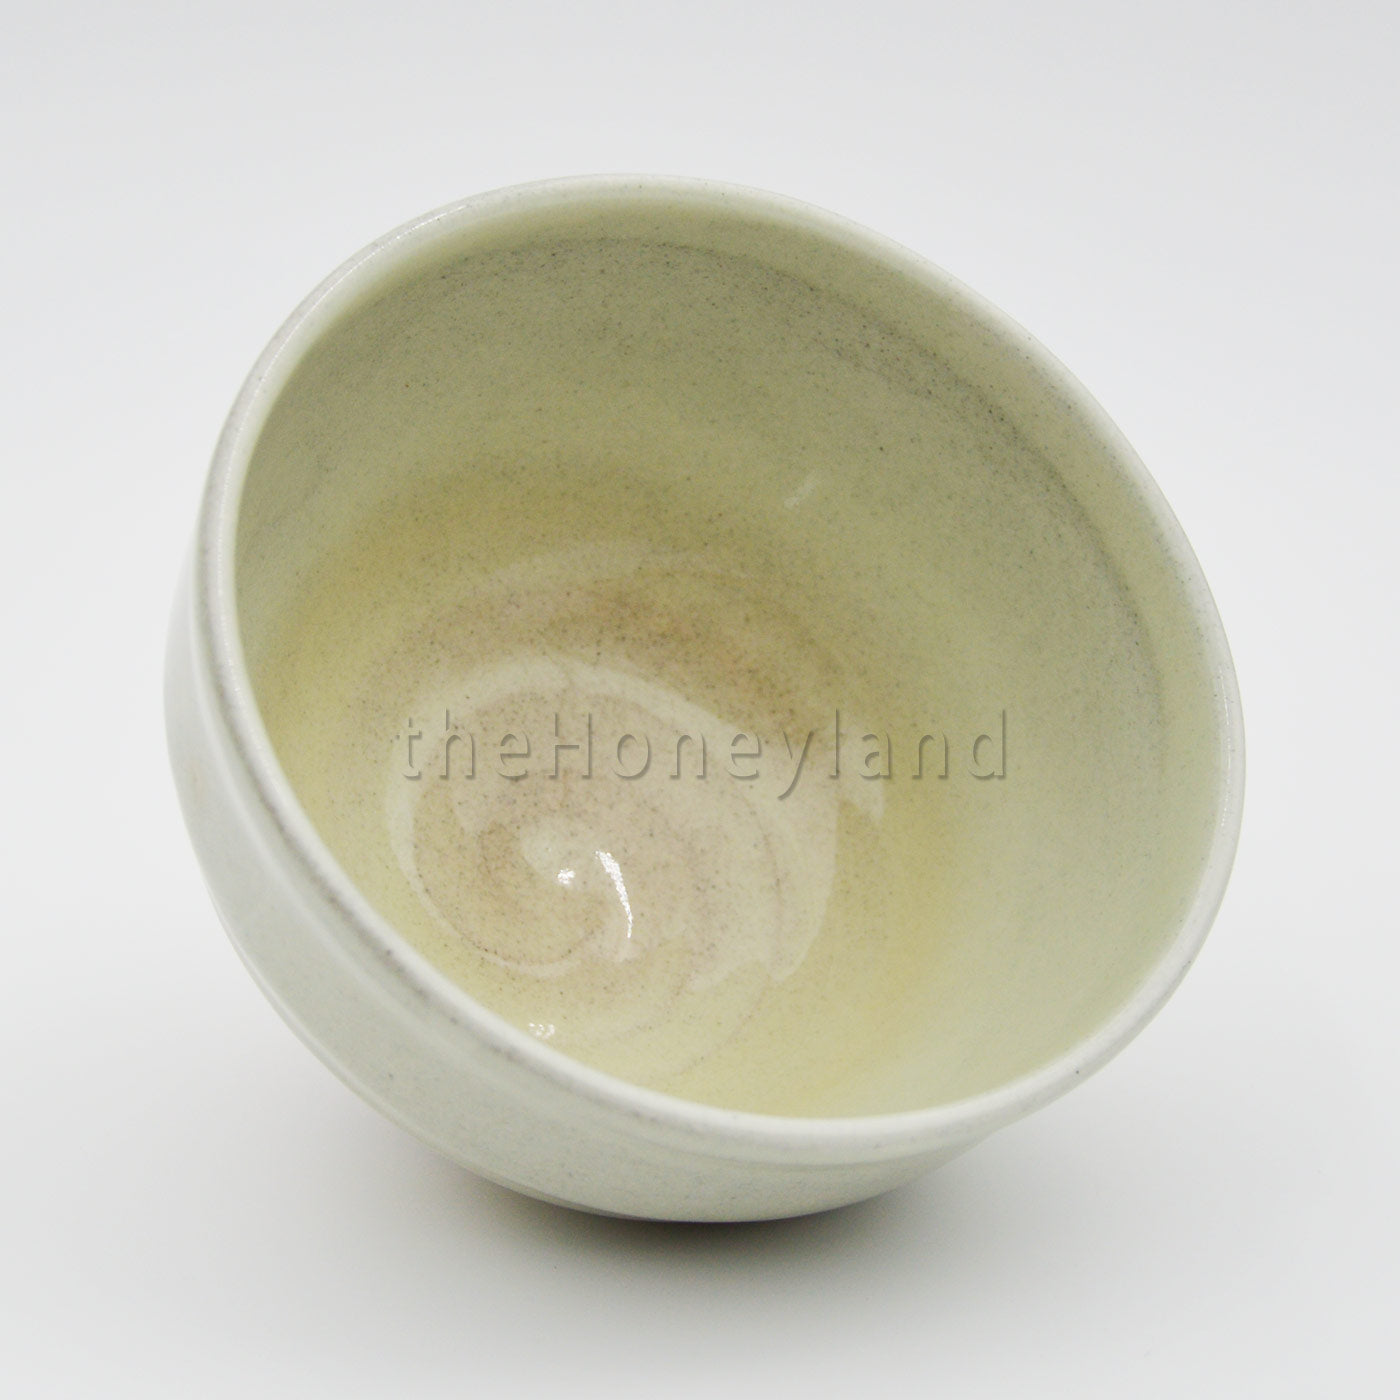 Chawan Matcha artigianale in ceramica -  Giappone